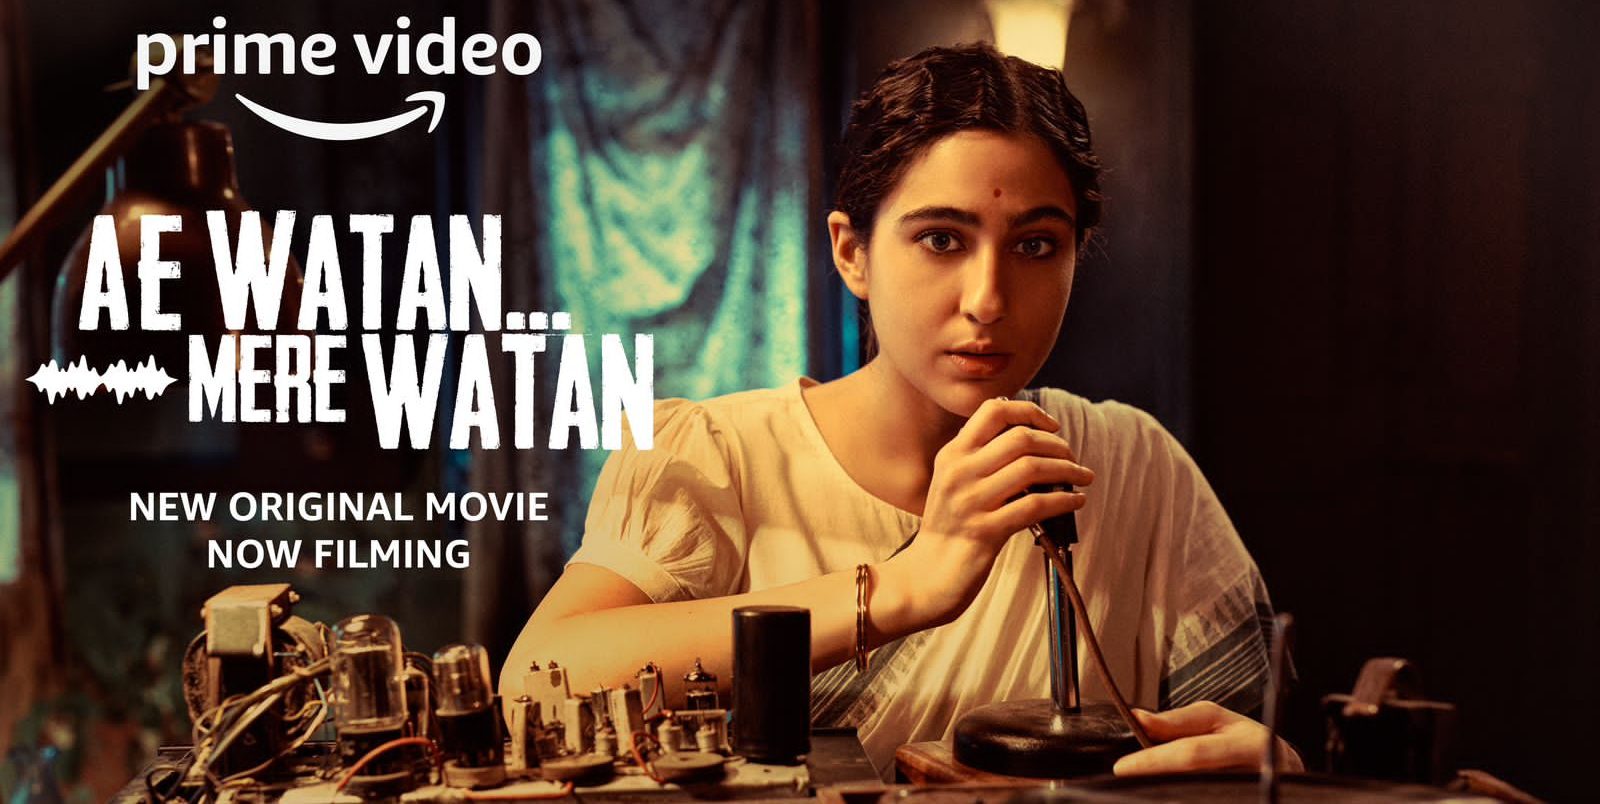 First-Look of Sara Ali Khan from “Ae Watan Mere Watan” released!